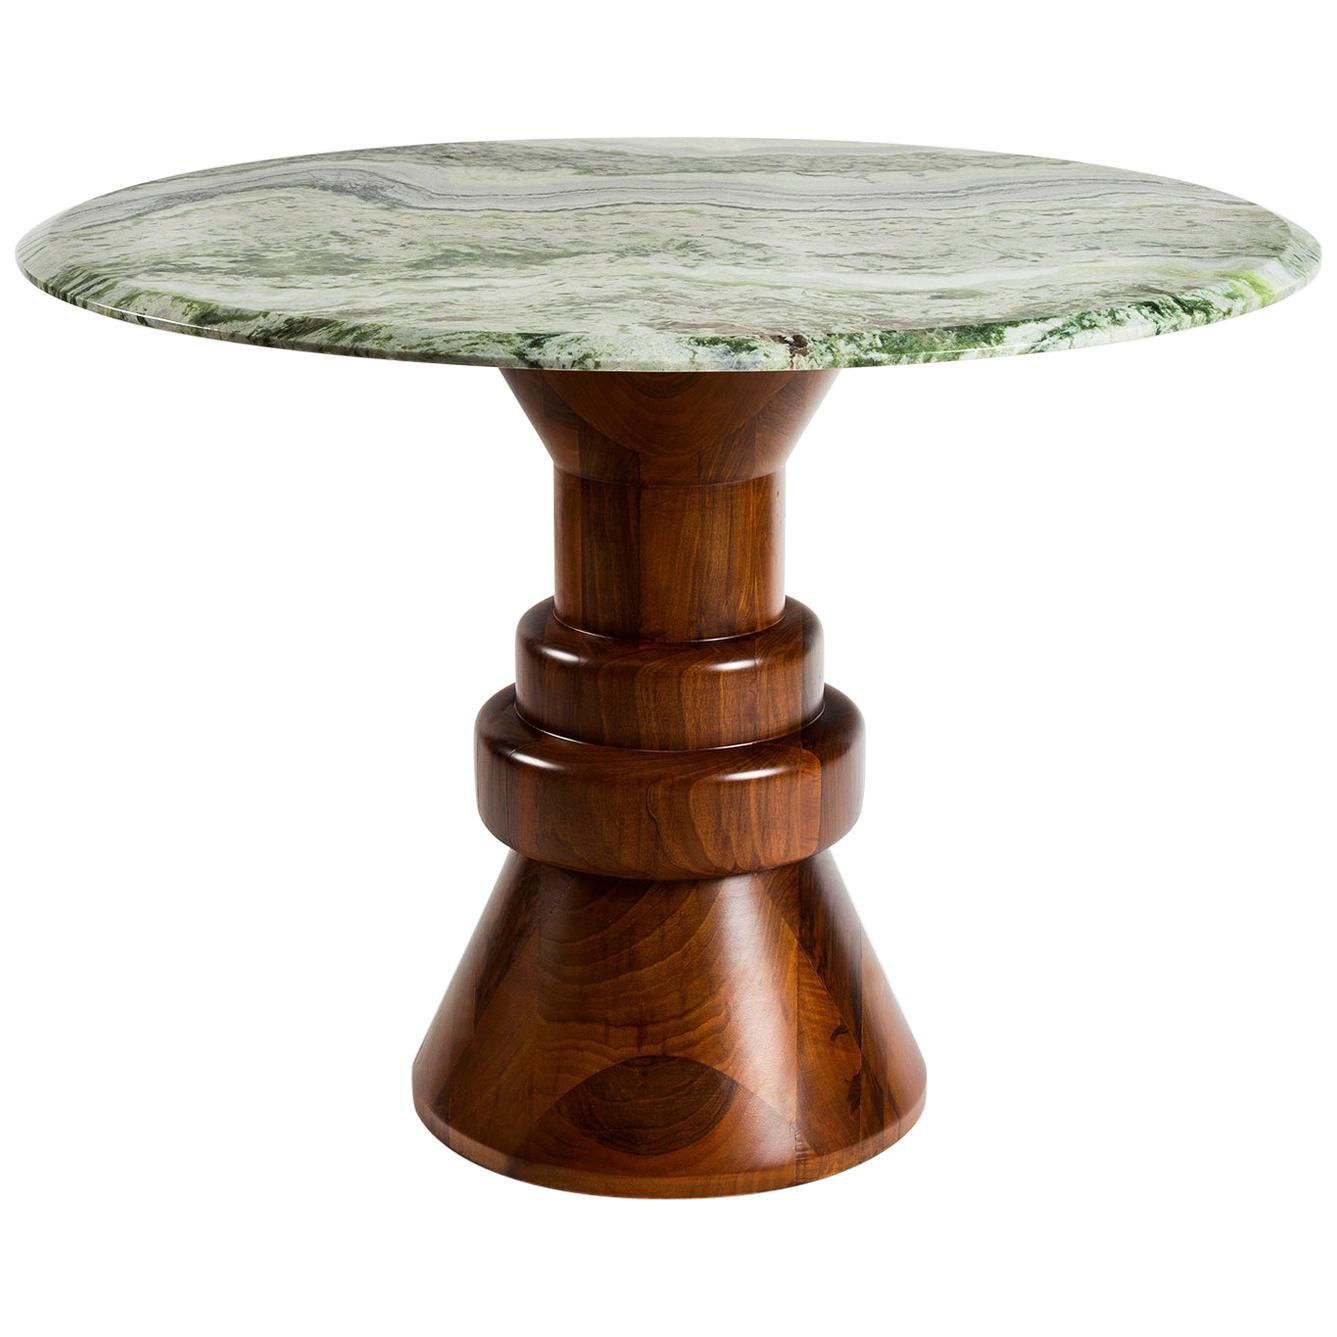 Cette table à manger ludique fabriquée à la main est parfaite pour accueillir 4 personnes dans les petits espaces. Le plateau en marbre rose est associé à une base sculpturale en bois de couleur vert foncé. Il peut être personnalisé dans différentes